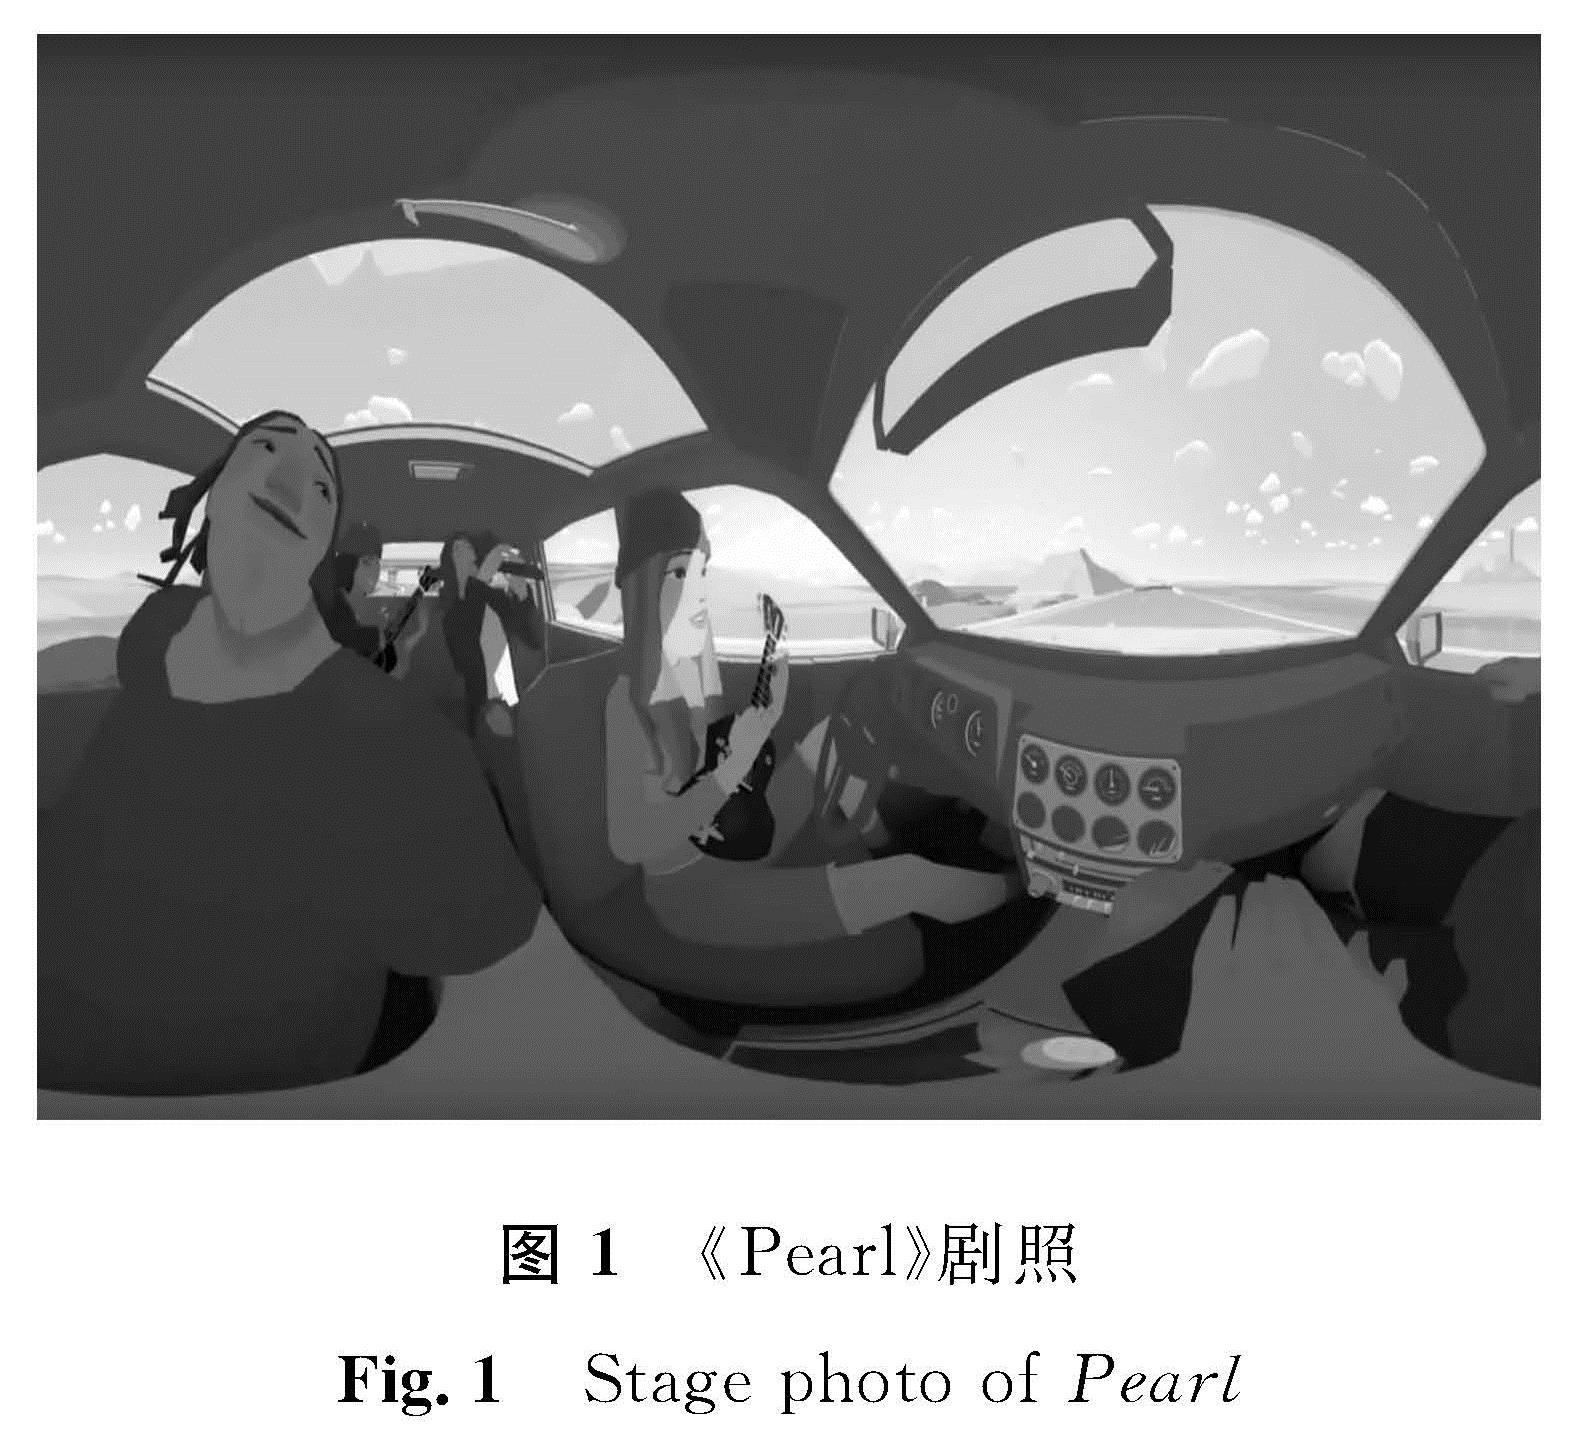 图1 《Pearl》剧照<br/>Fig.1 Stage photo of Pearl